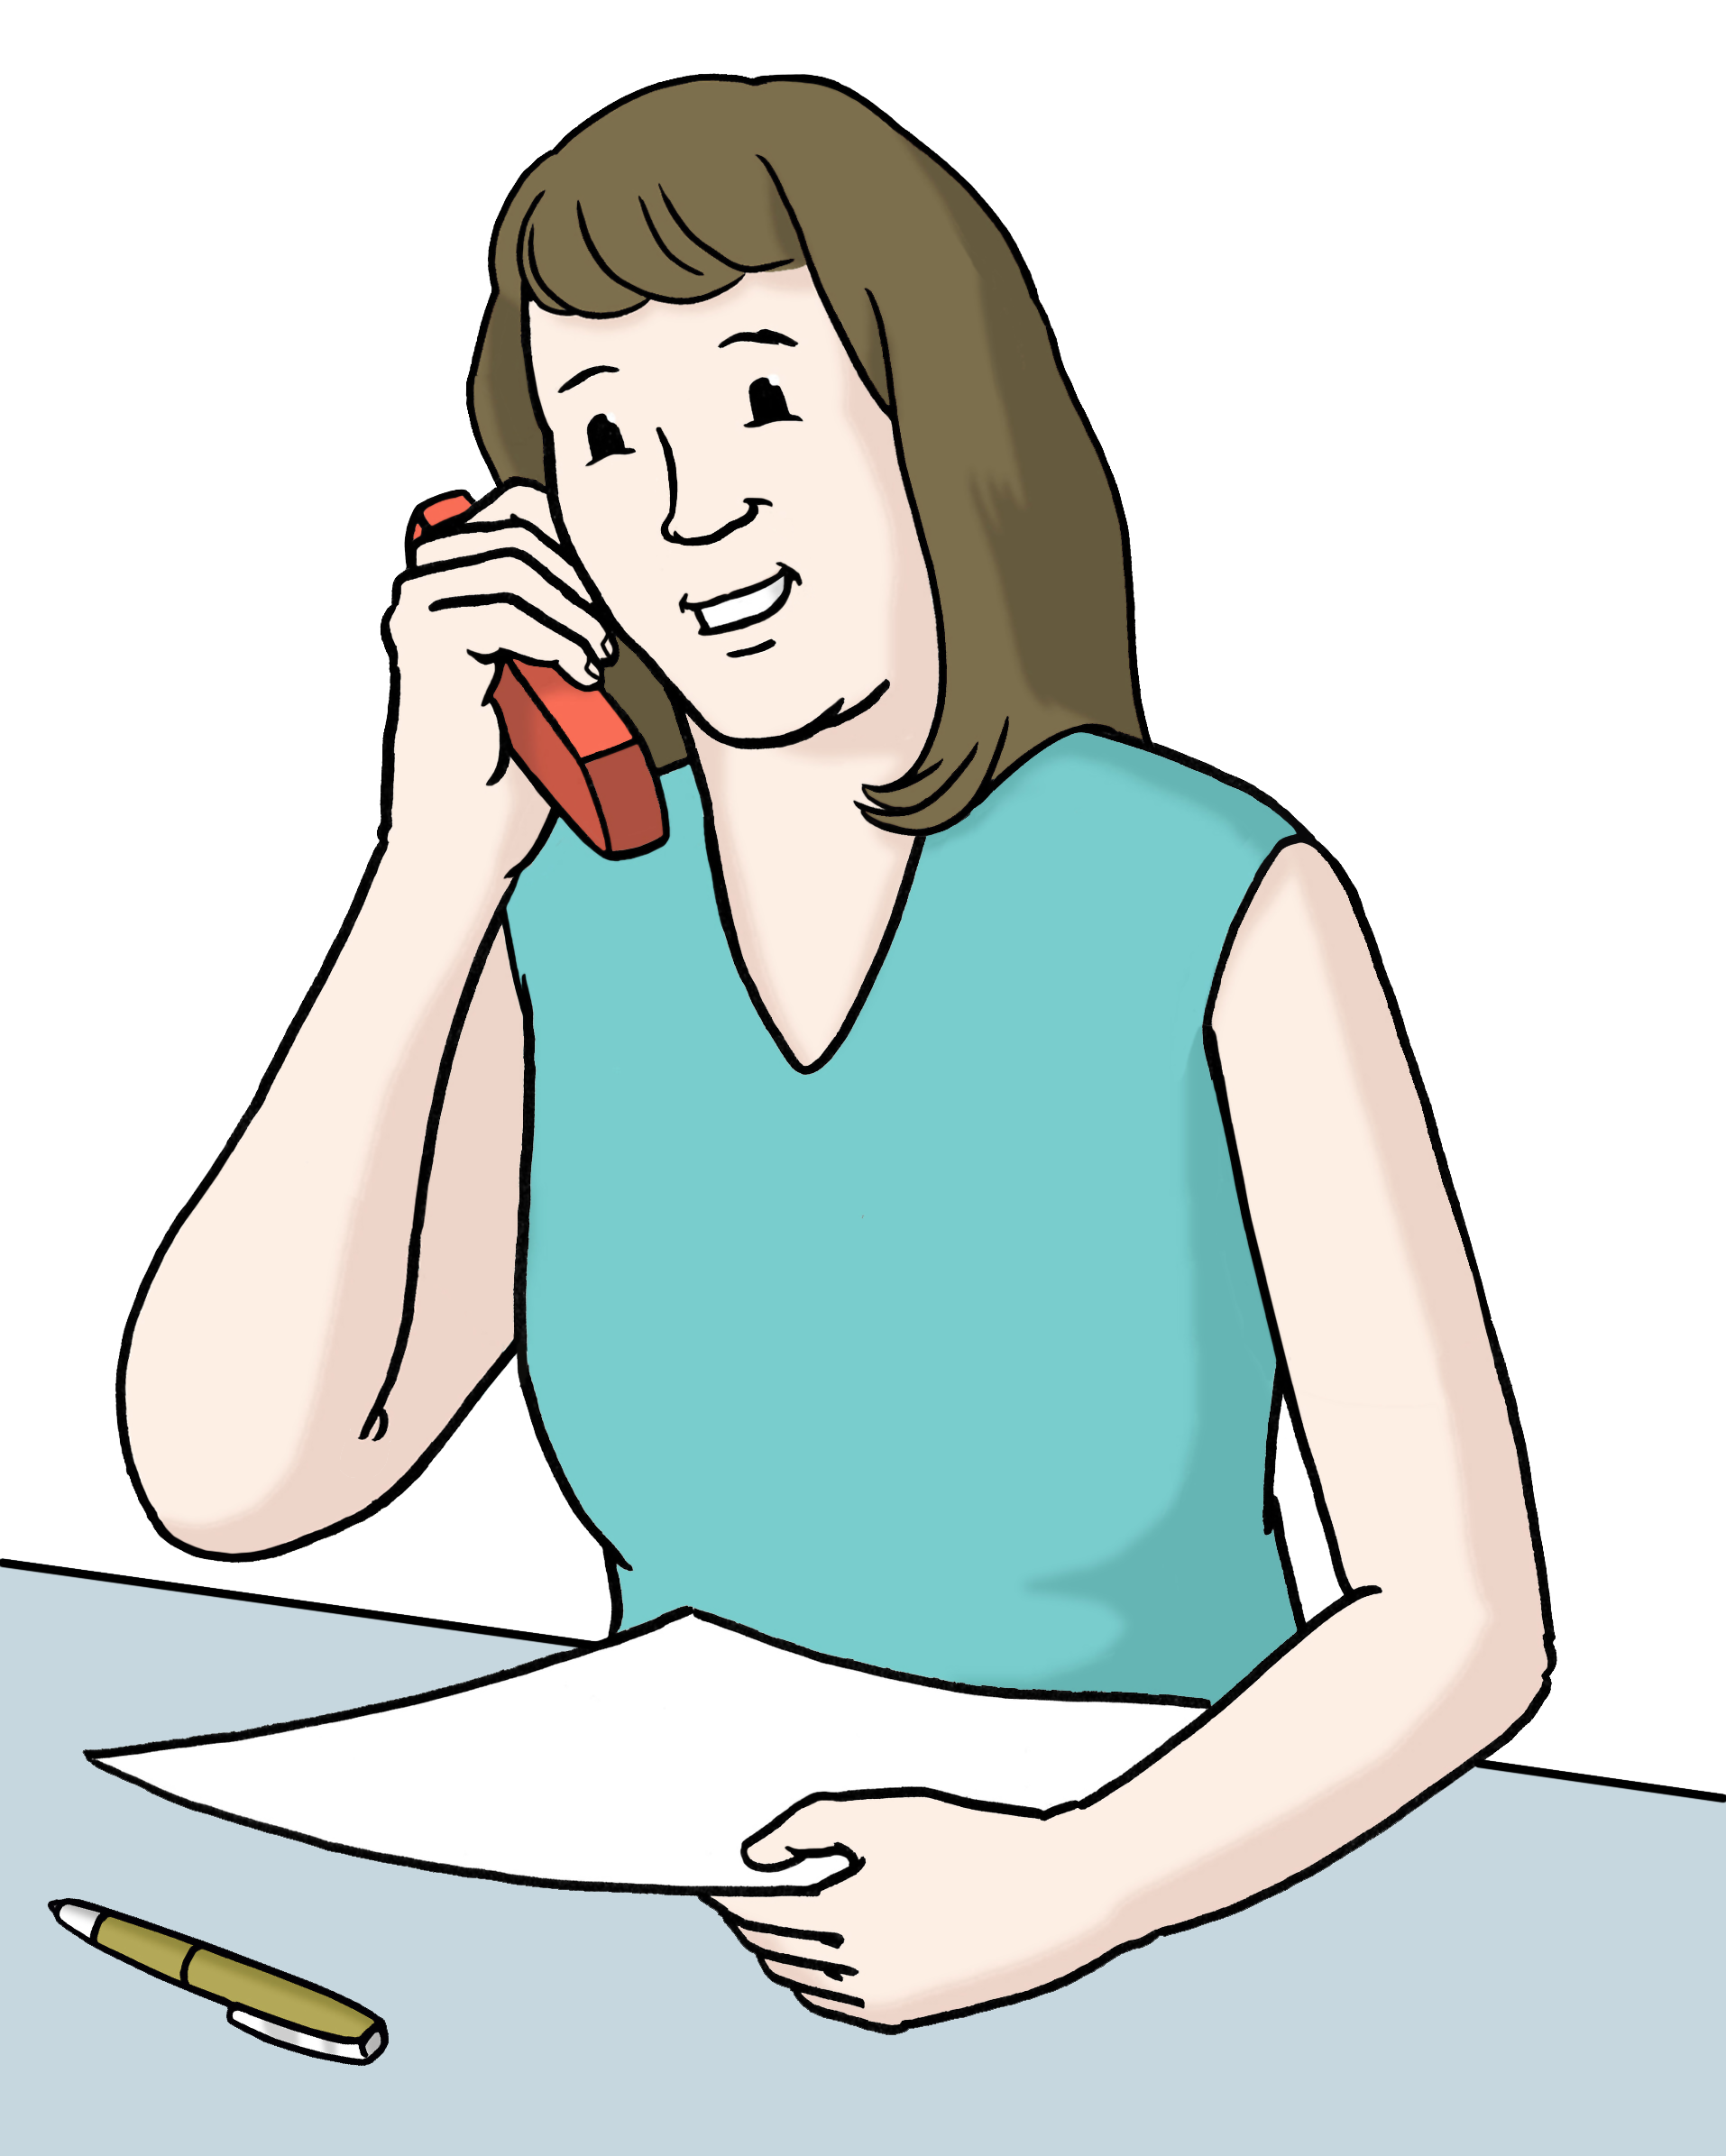 Auf diesem Bild sieht man eine Frau. Sie hält ein Telefon in der Hand. Vor ihr liegen ein Blatt Papier und ein Kugelschreiber.